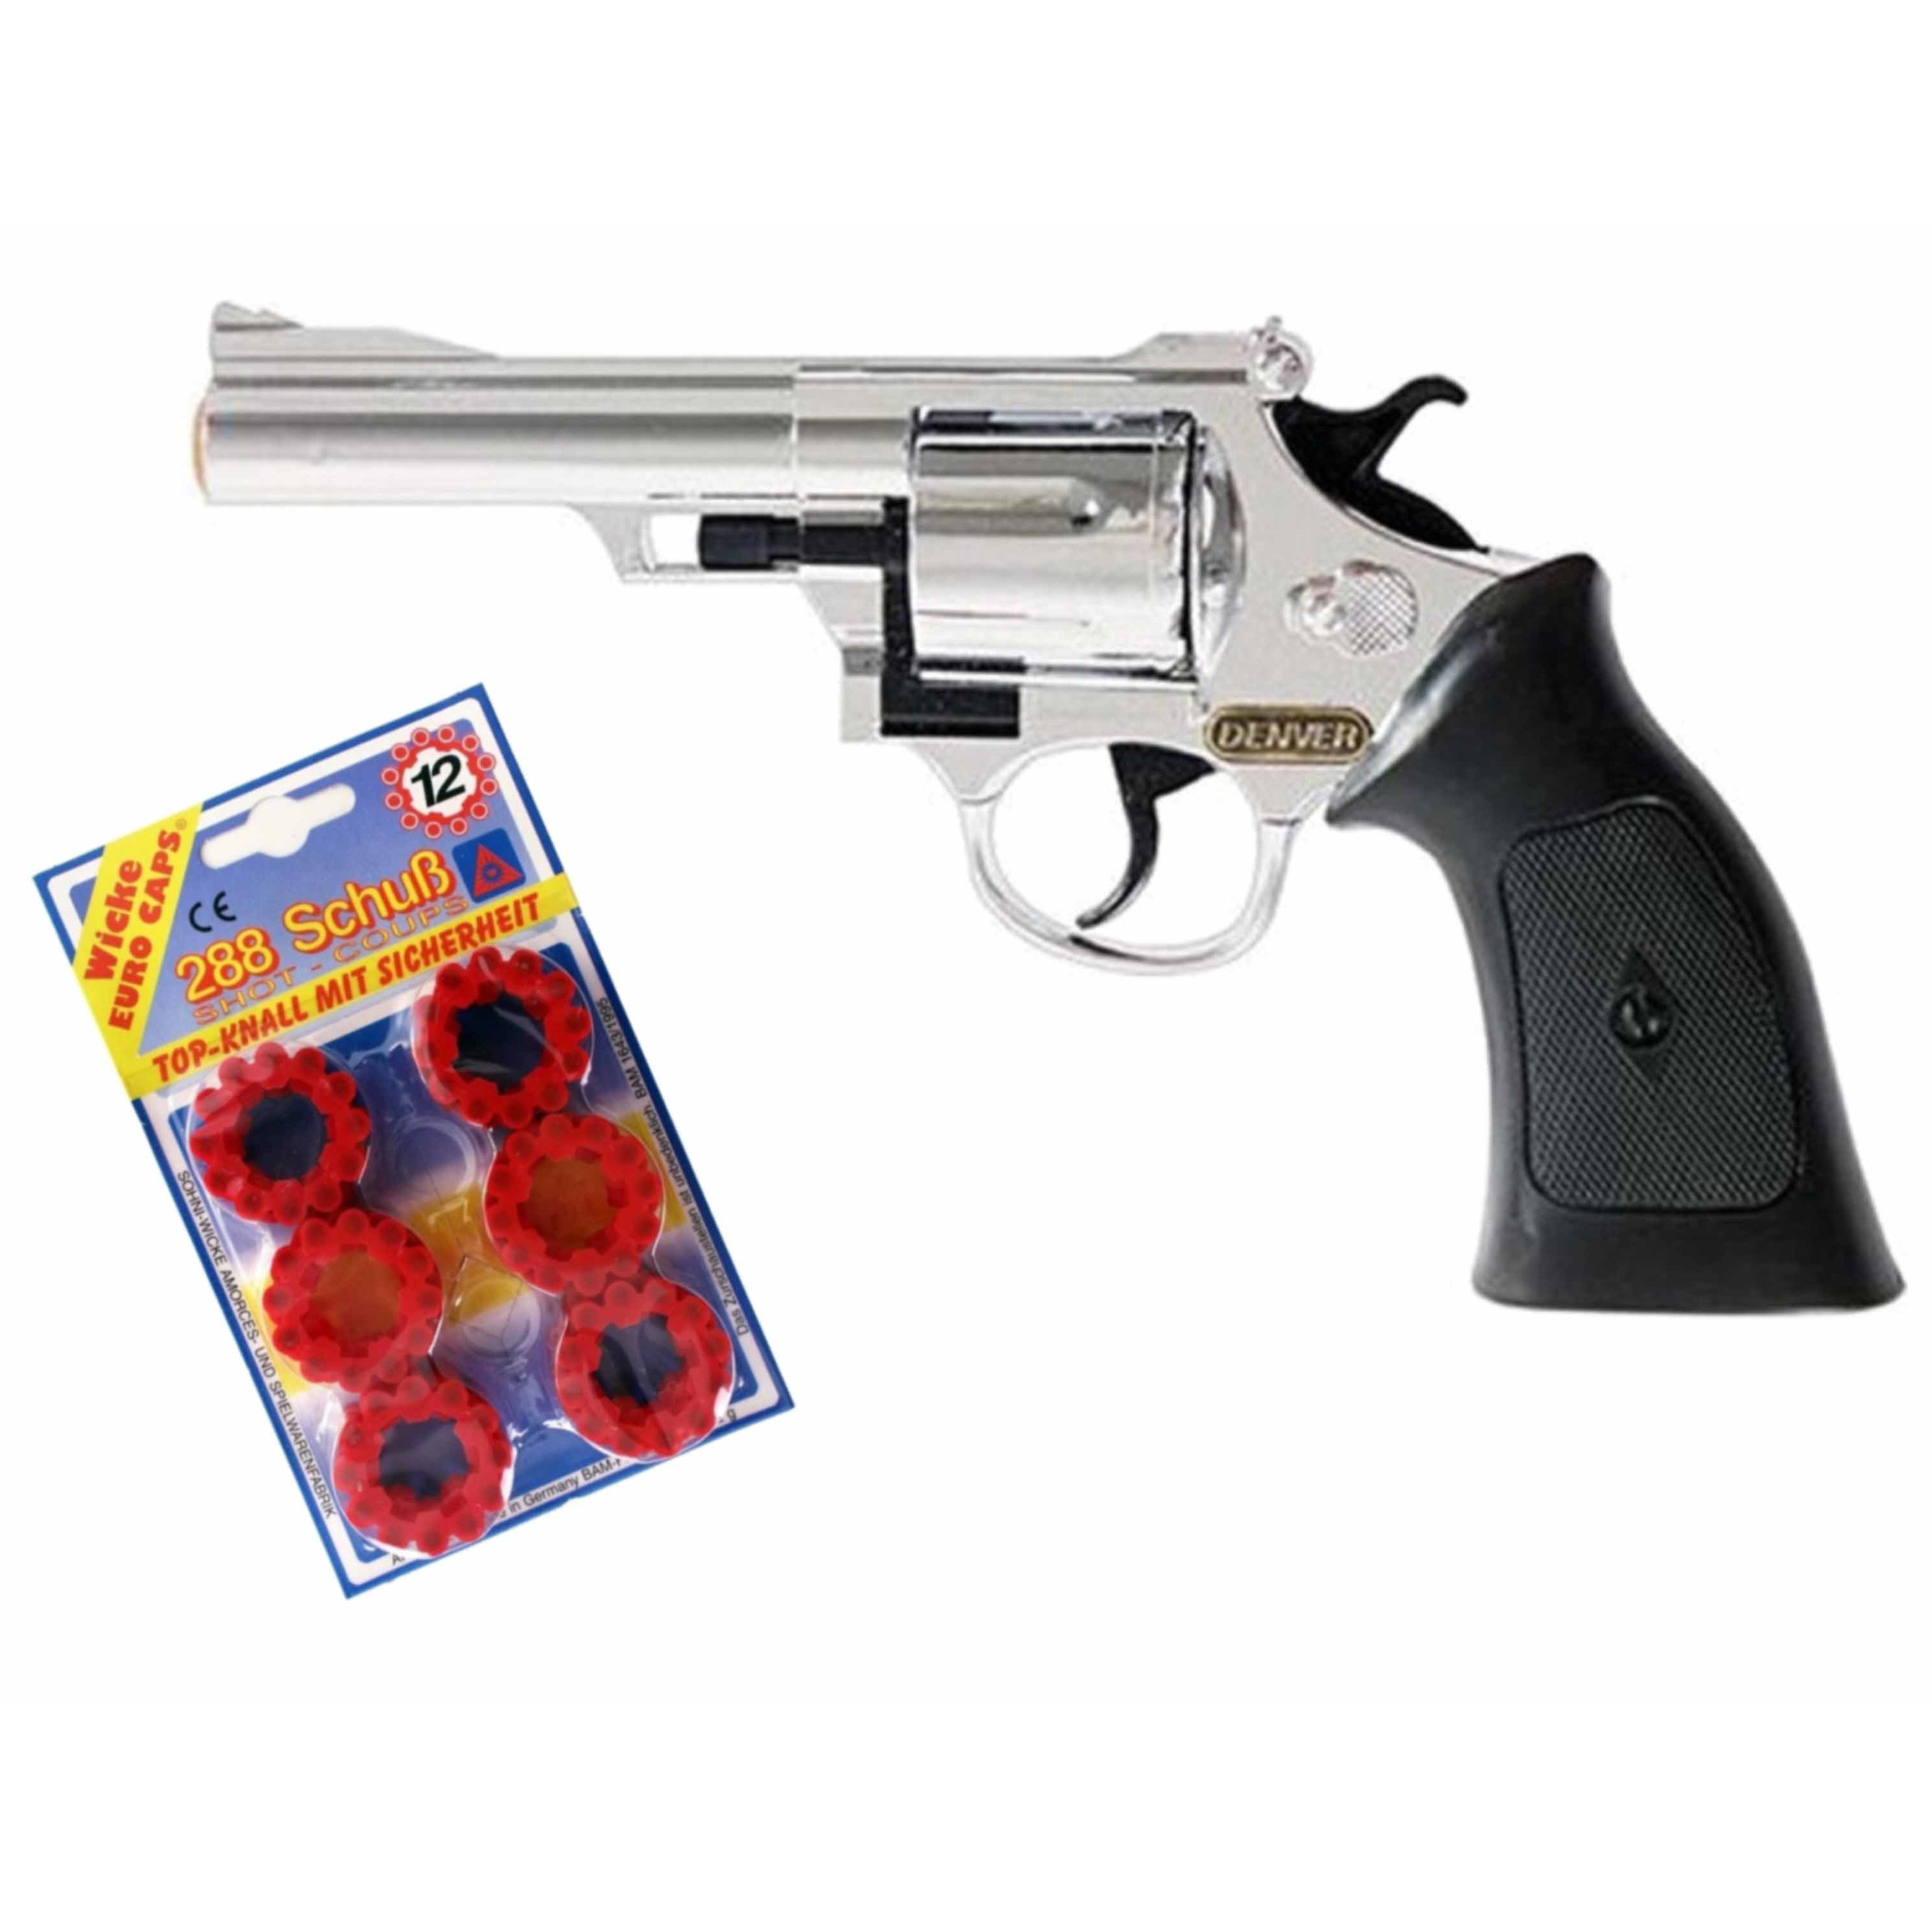 Plaffertjes speelgoed pistool-revolver met 12 schoten magazijn